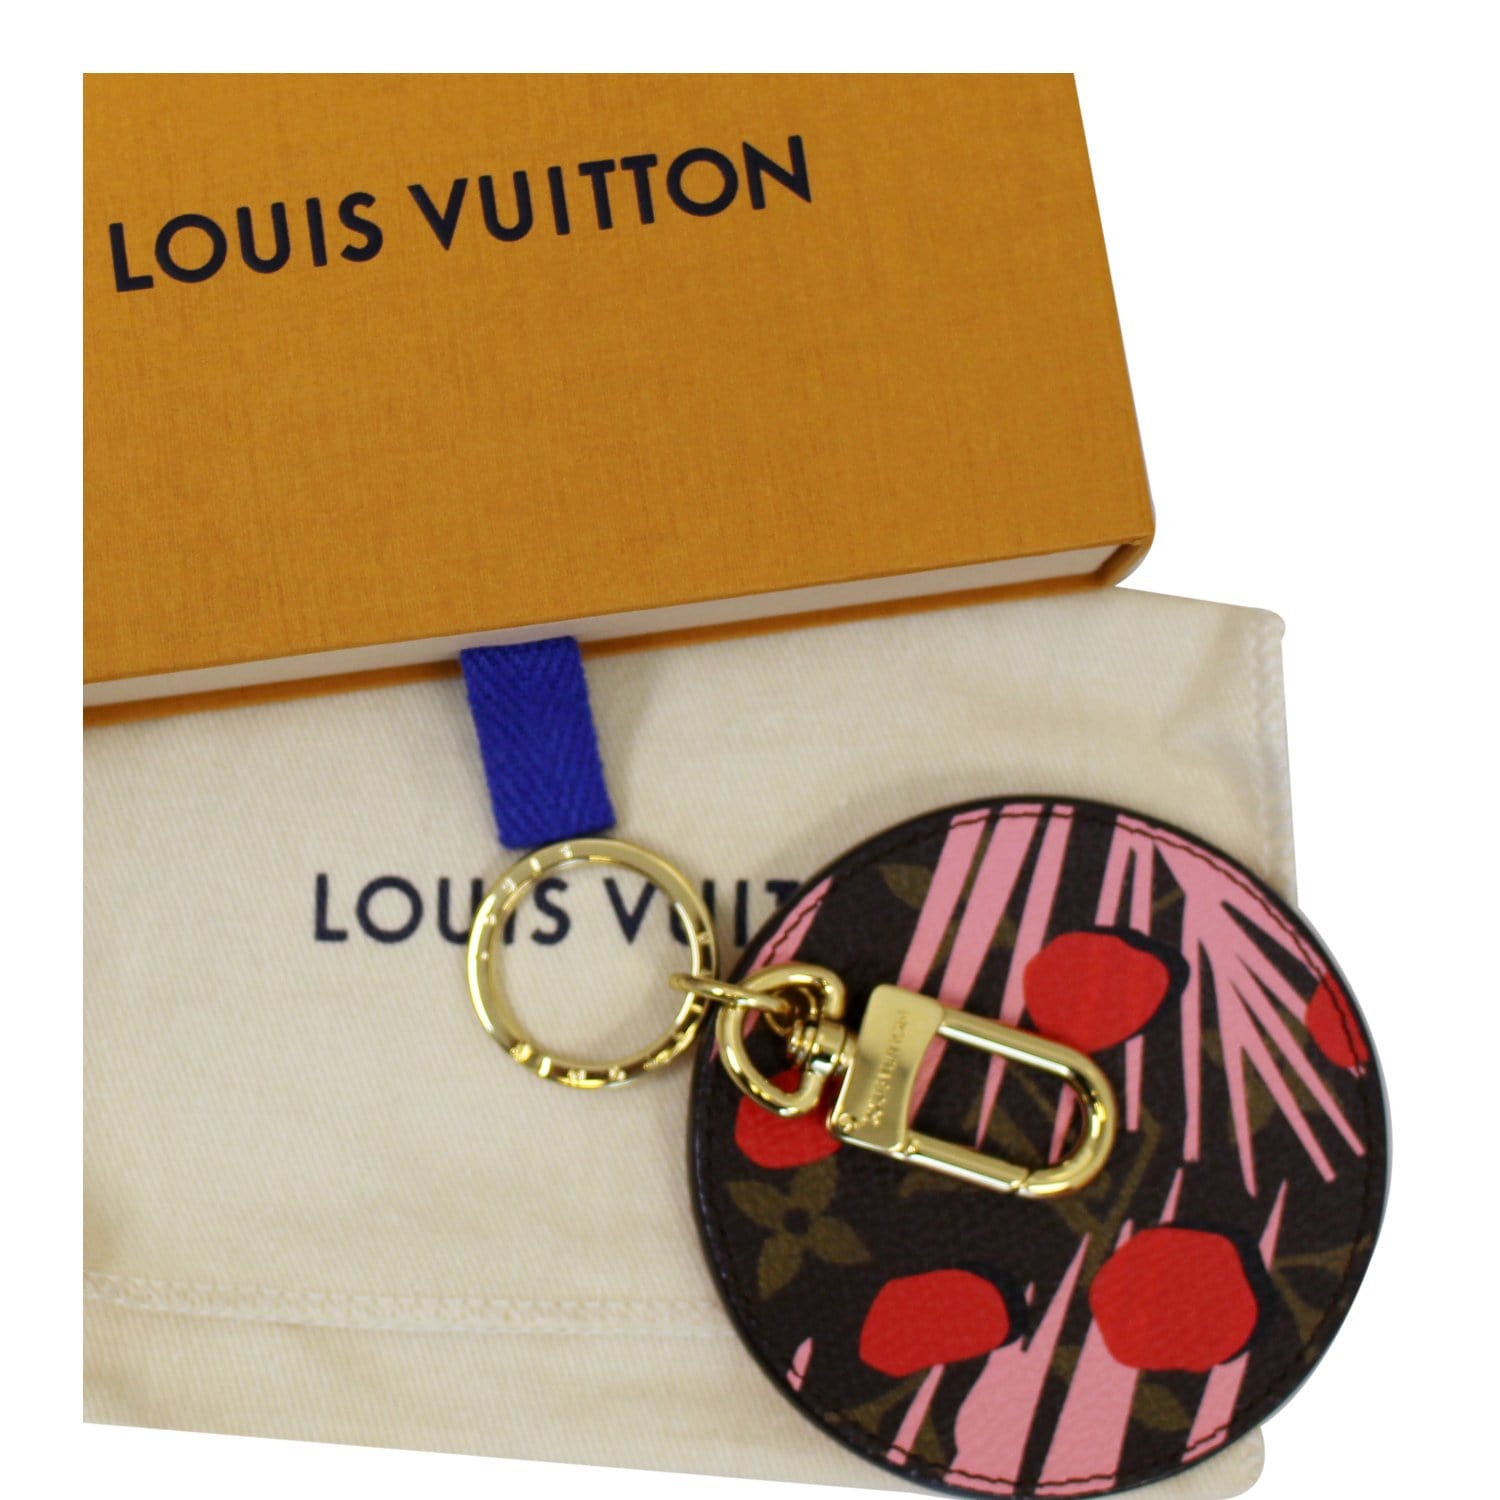 Louis Vuitton Keychain/Bag Charm/Card holder